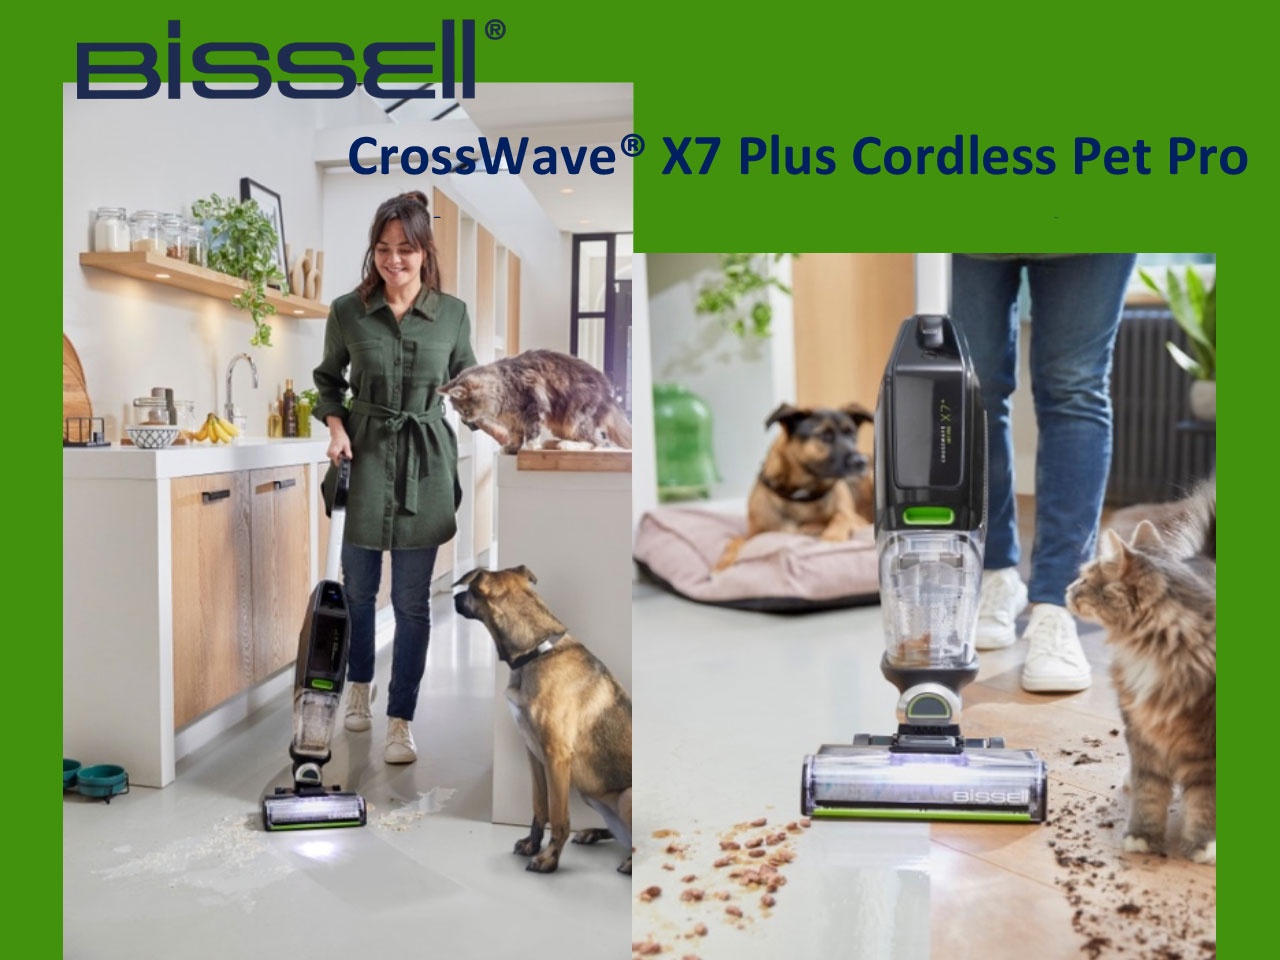 BISSELL® CrossWave® X7 Plus Cordless Pet Pro : nettoyage sec et humide pour les foyers avec animaux domestiques